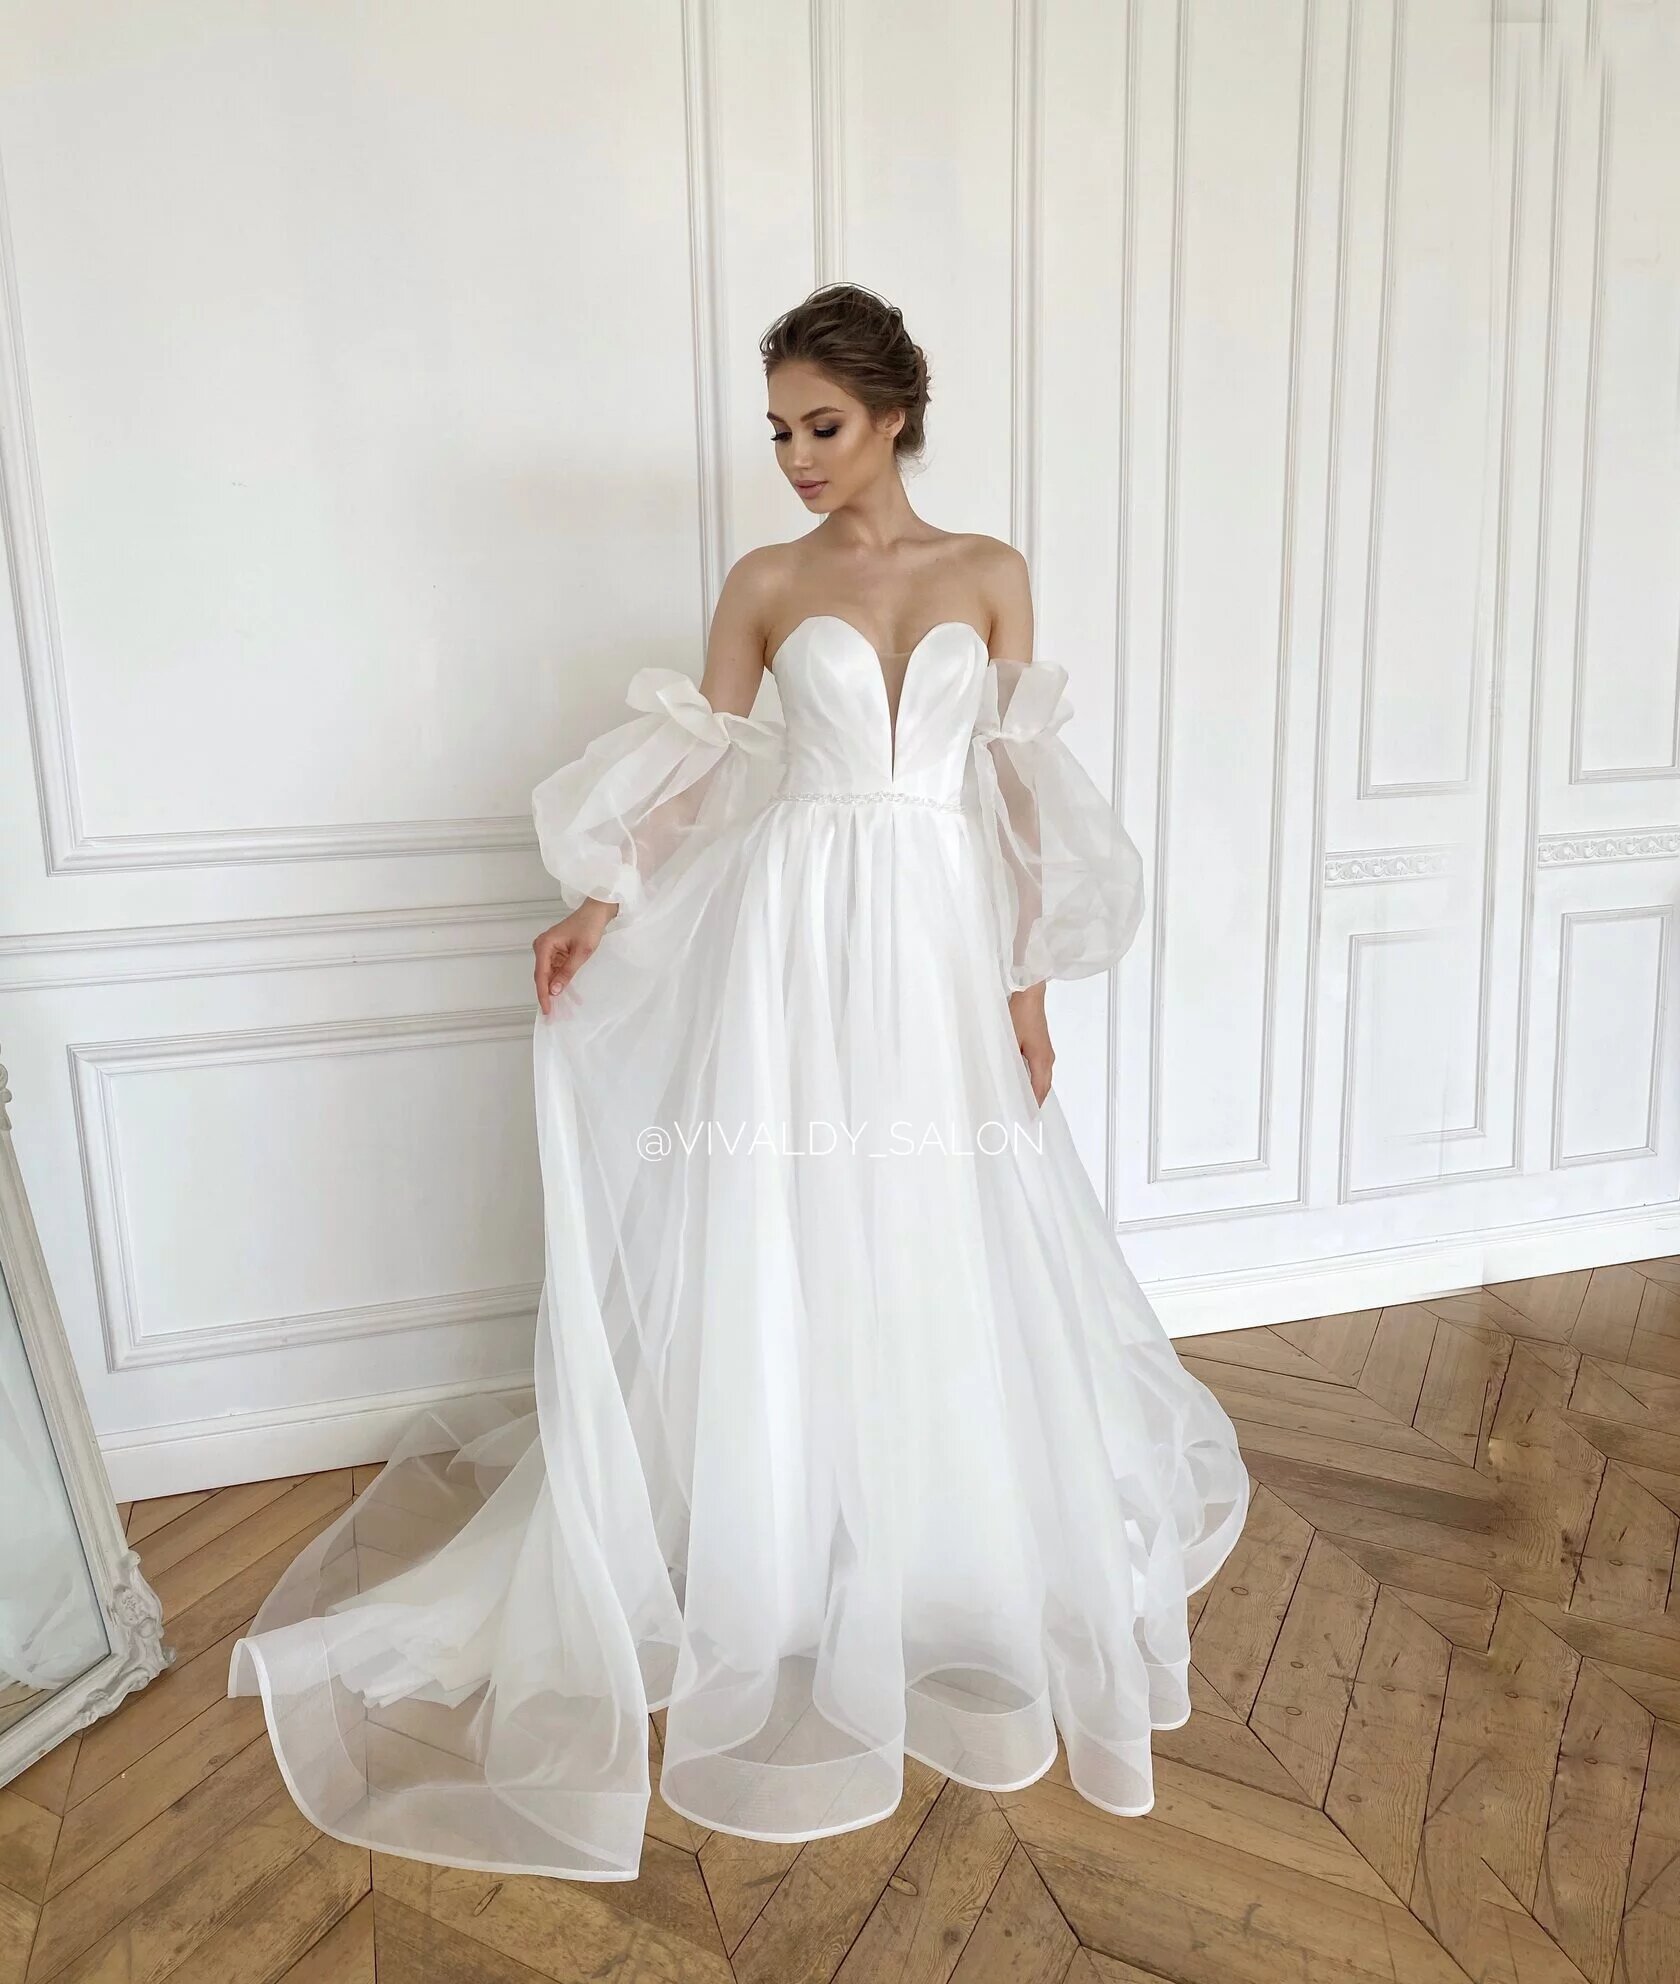 платья свадебные новосибирск каталог недорого фото